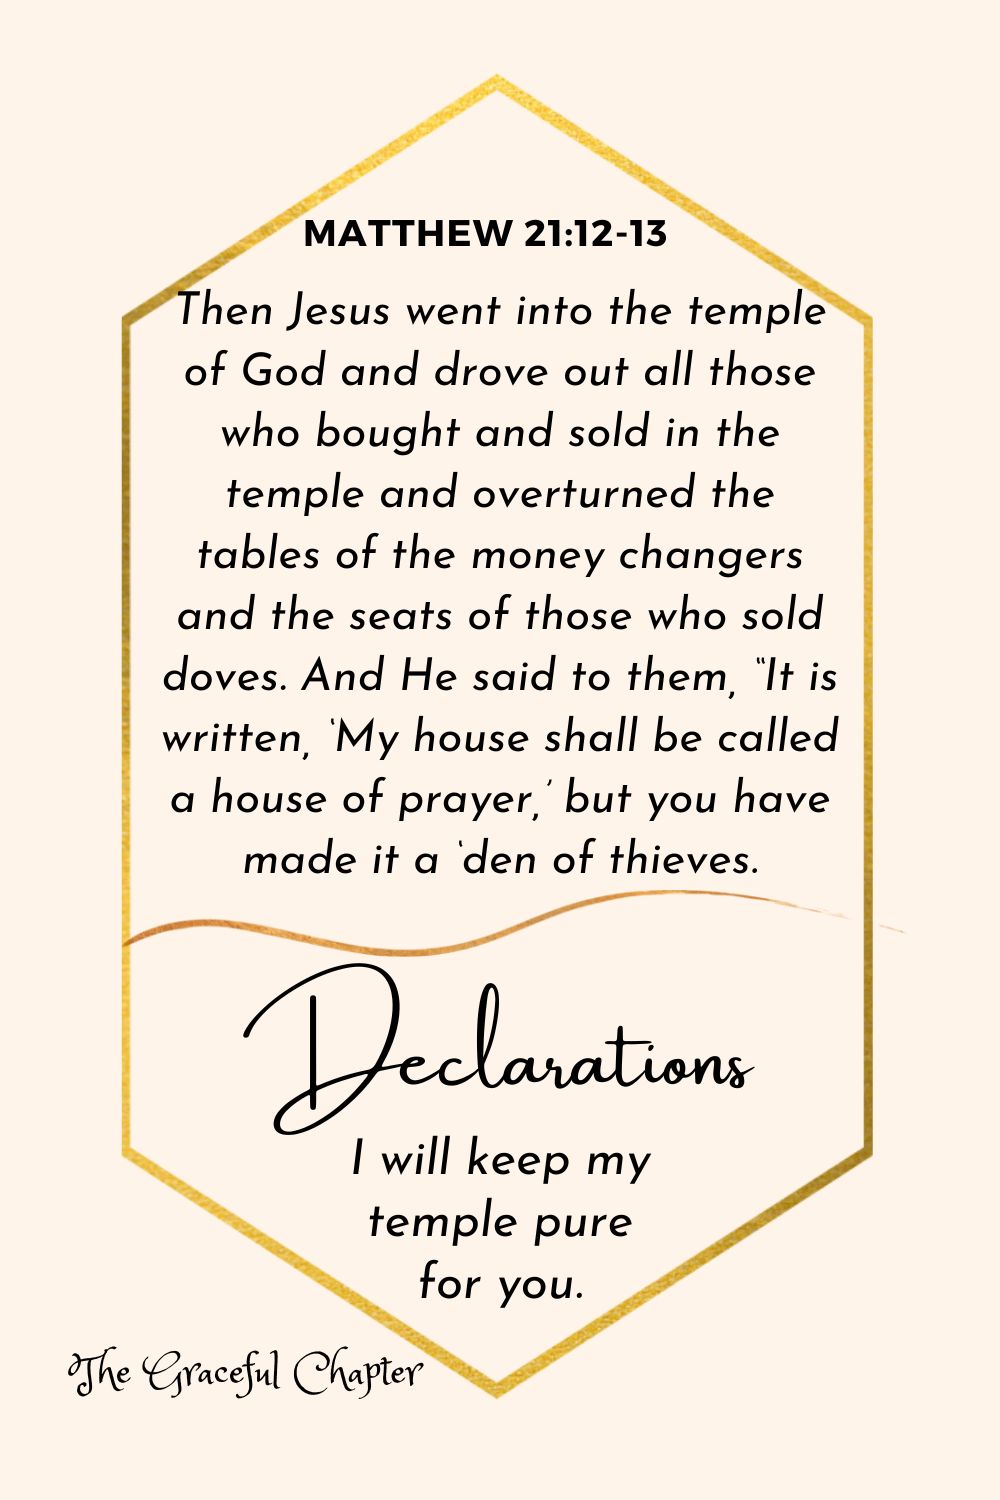 Declaration - Matthew 21:12-13